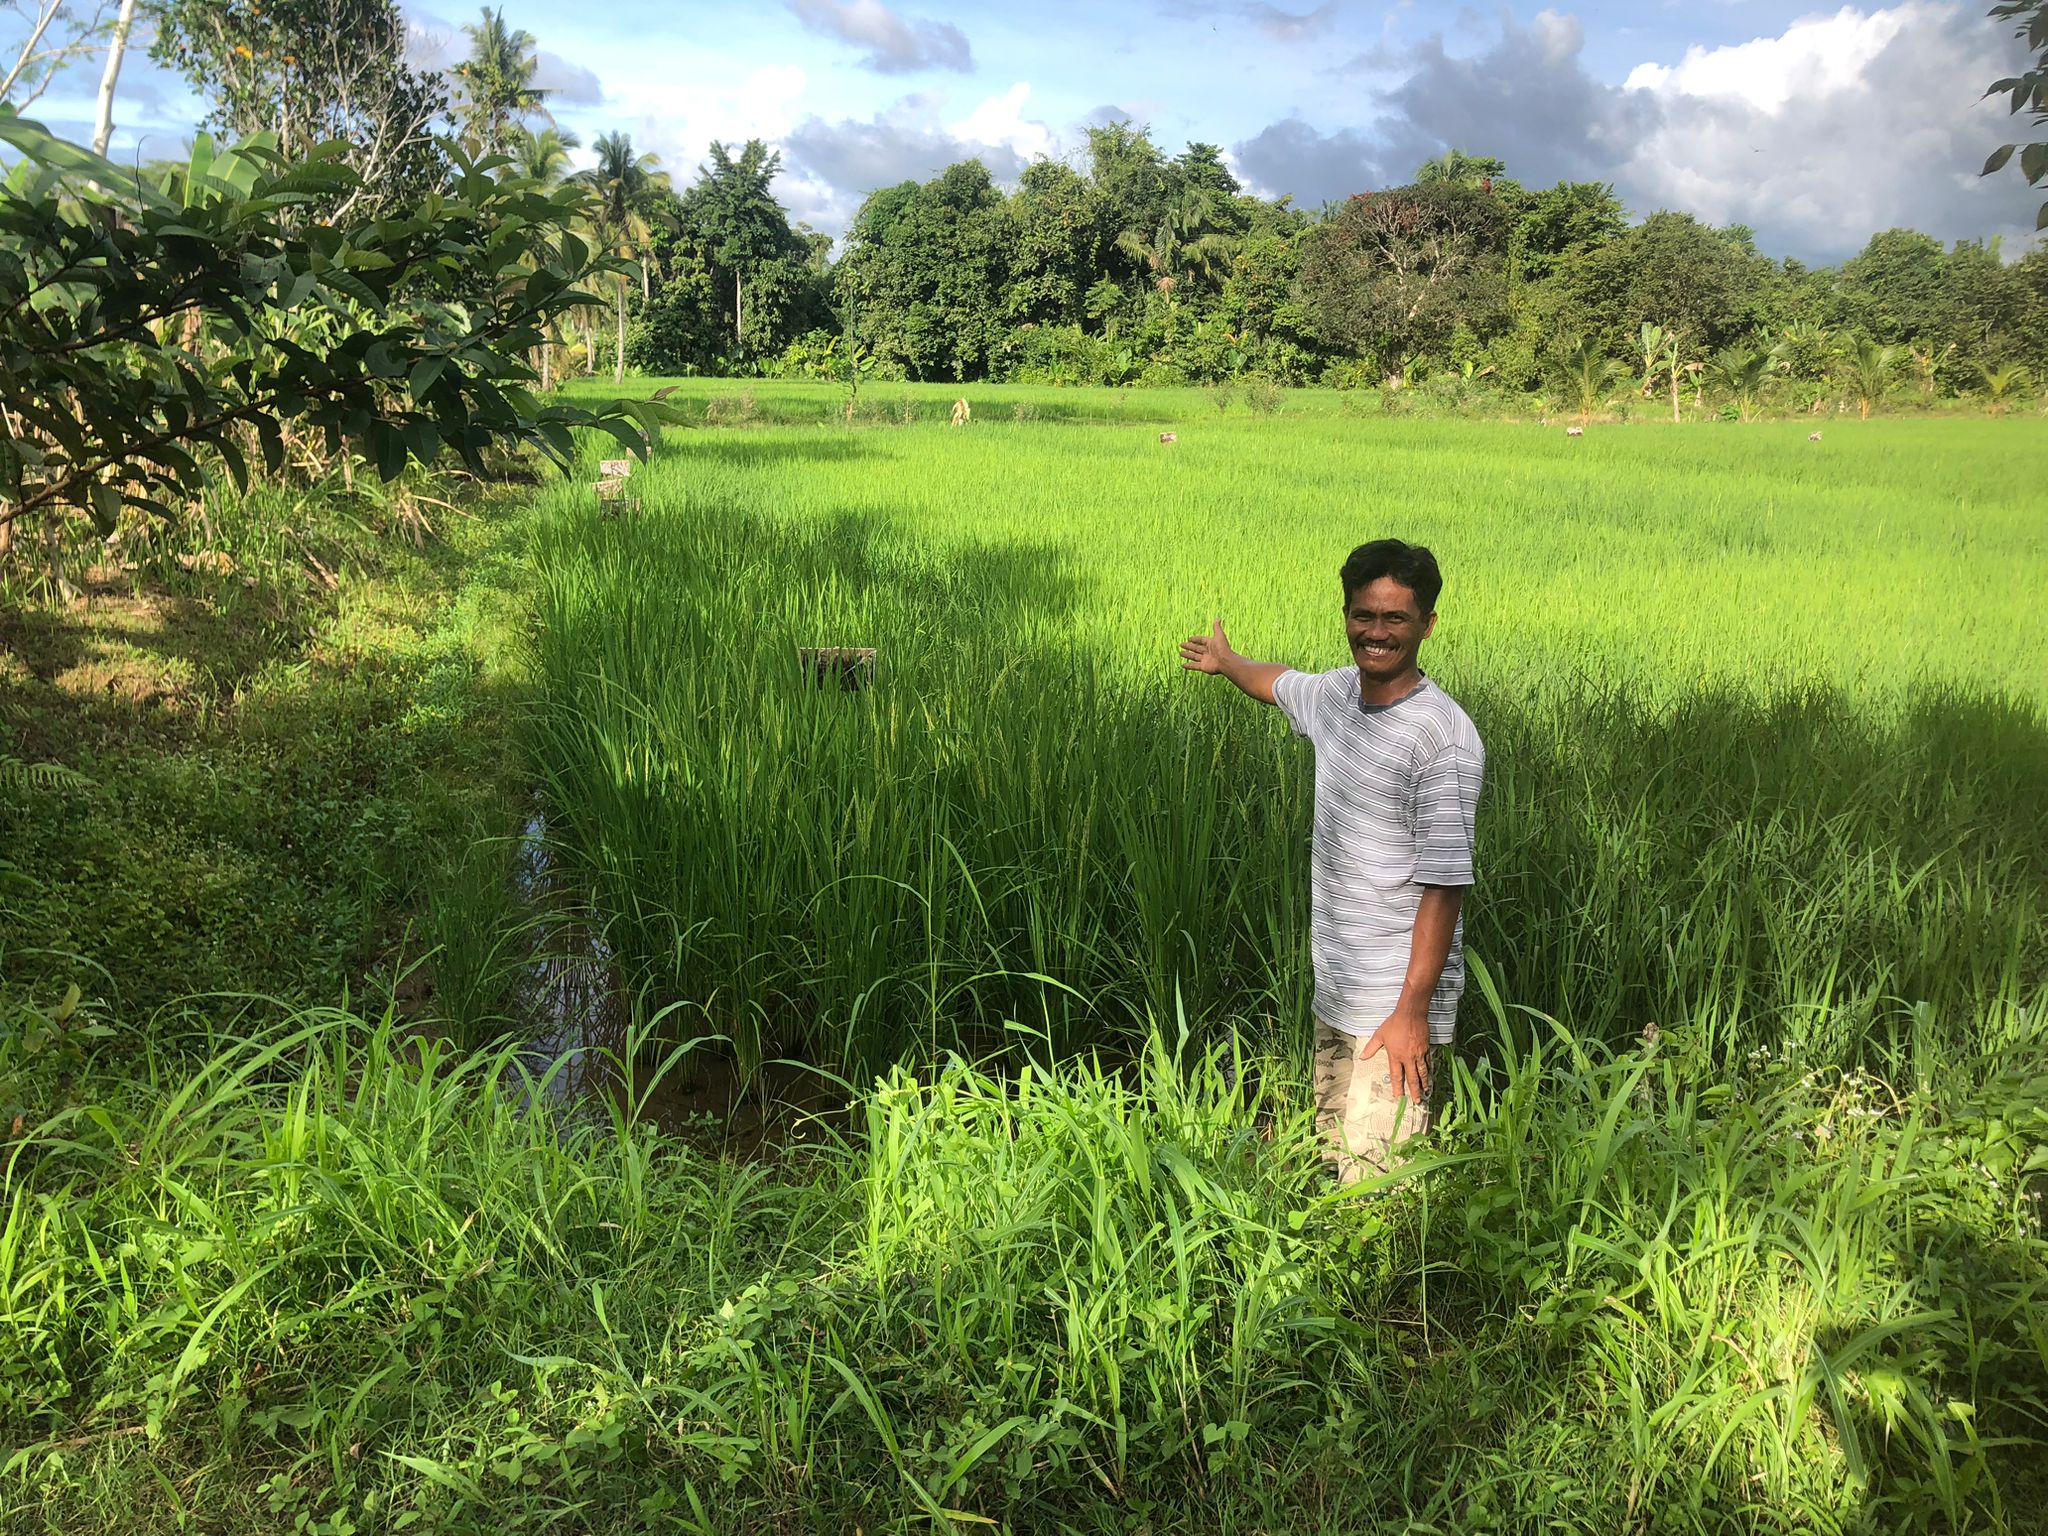 Das Foto zeigt einen Reisbauern, der lächelnd vor seinem Reisfeld steht und auf dieses zeigt.